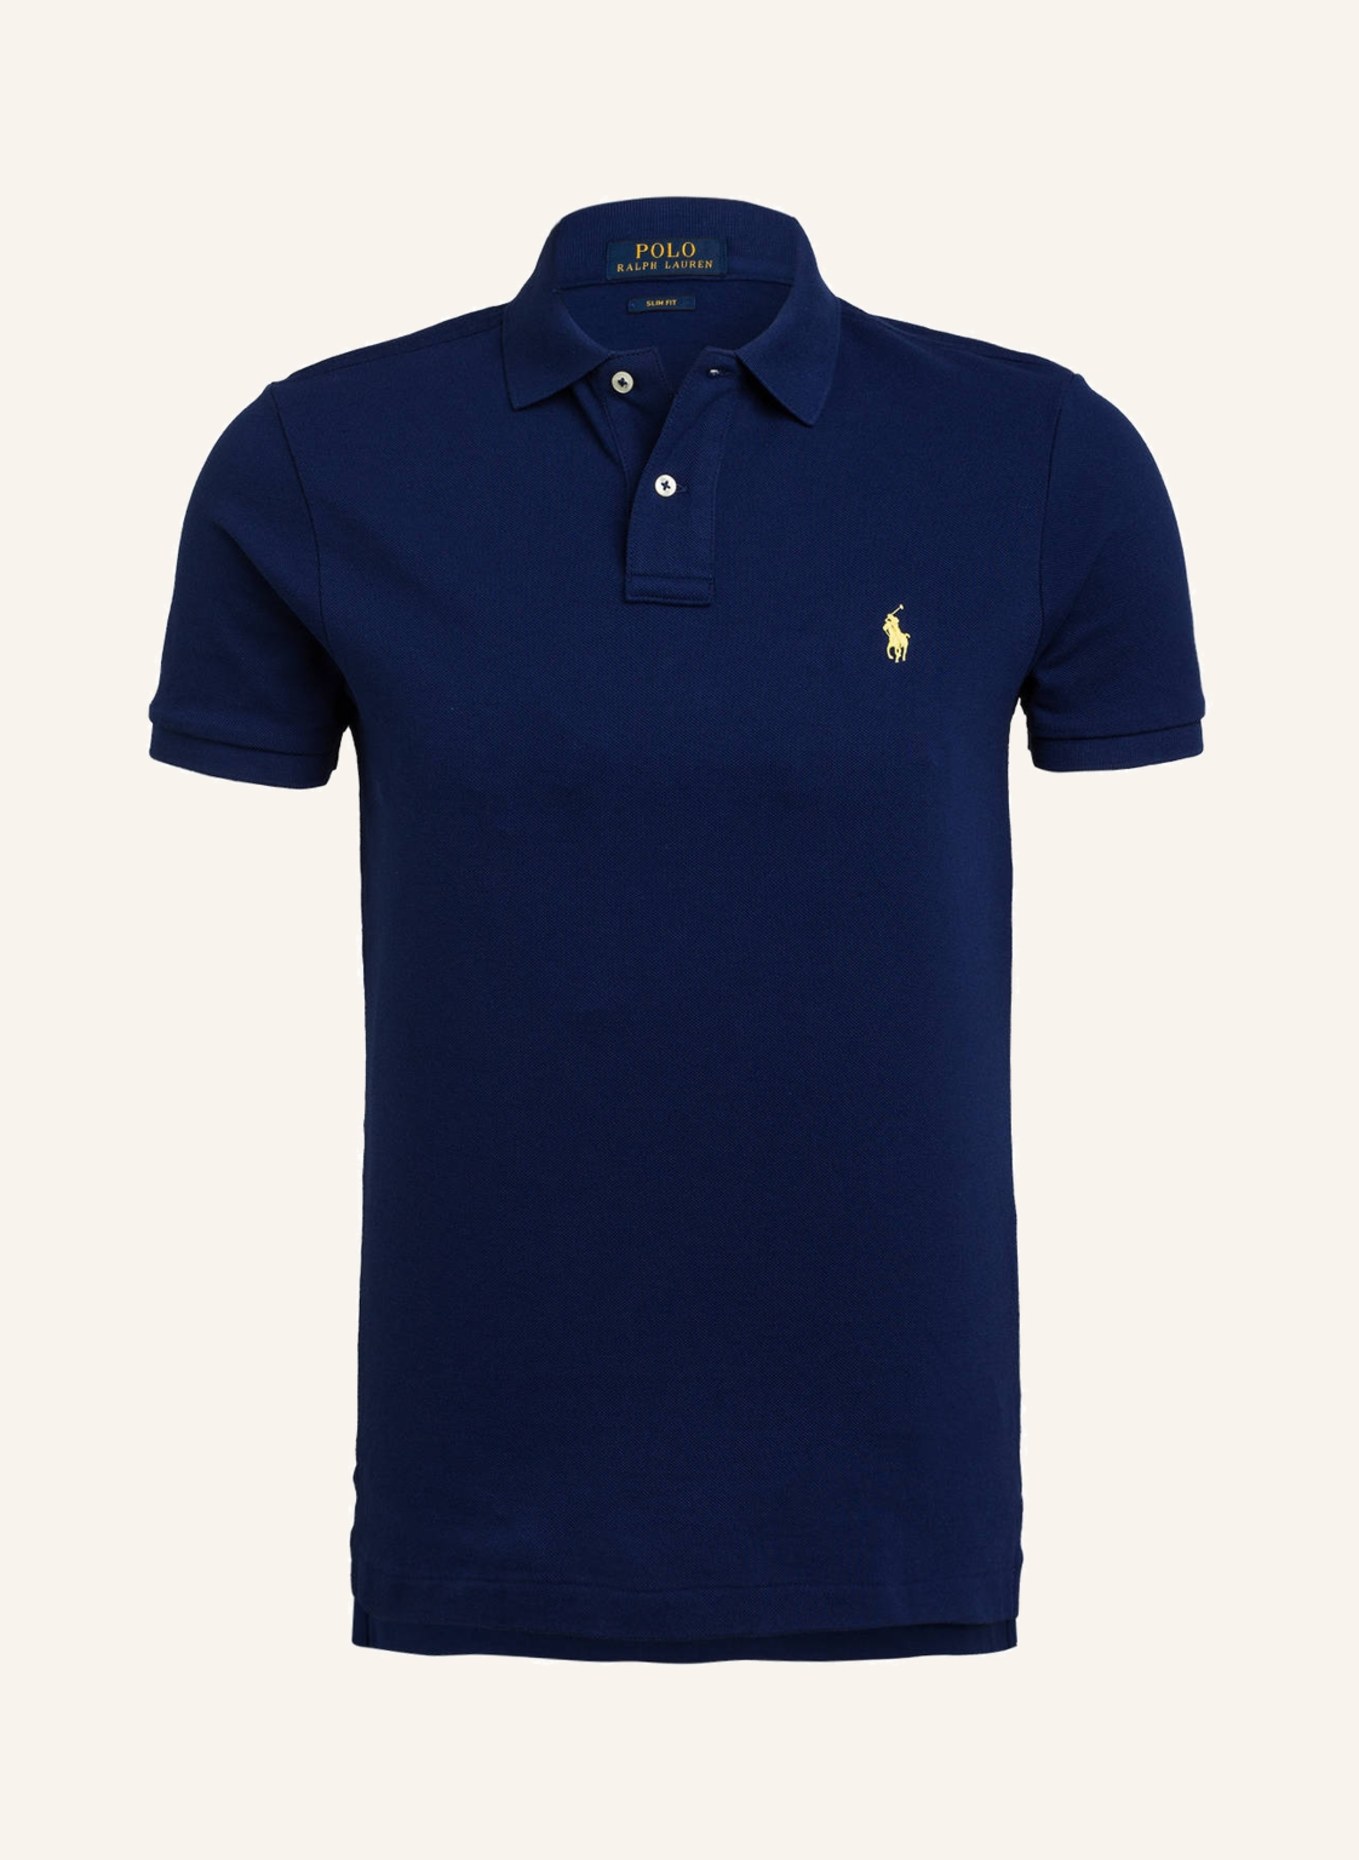 POLO RALPH LAUREN Piqué-Poloshirt Slim Fit, Farbe: DUNKELBLAU (Bild 1)